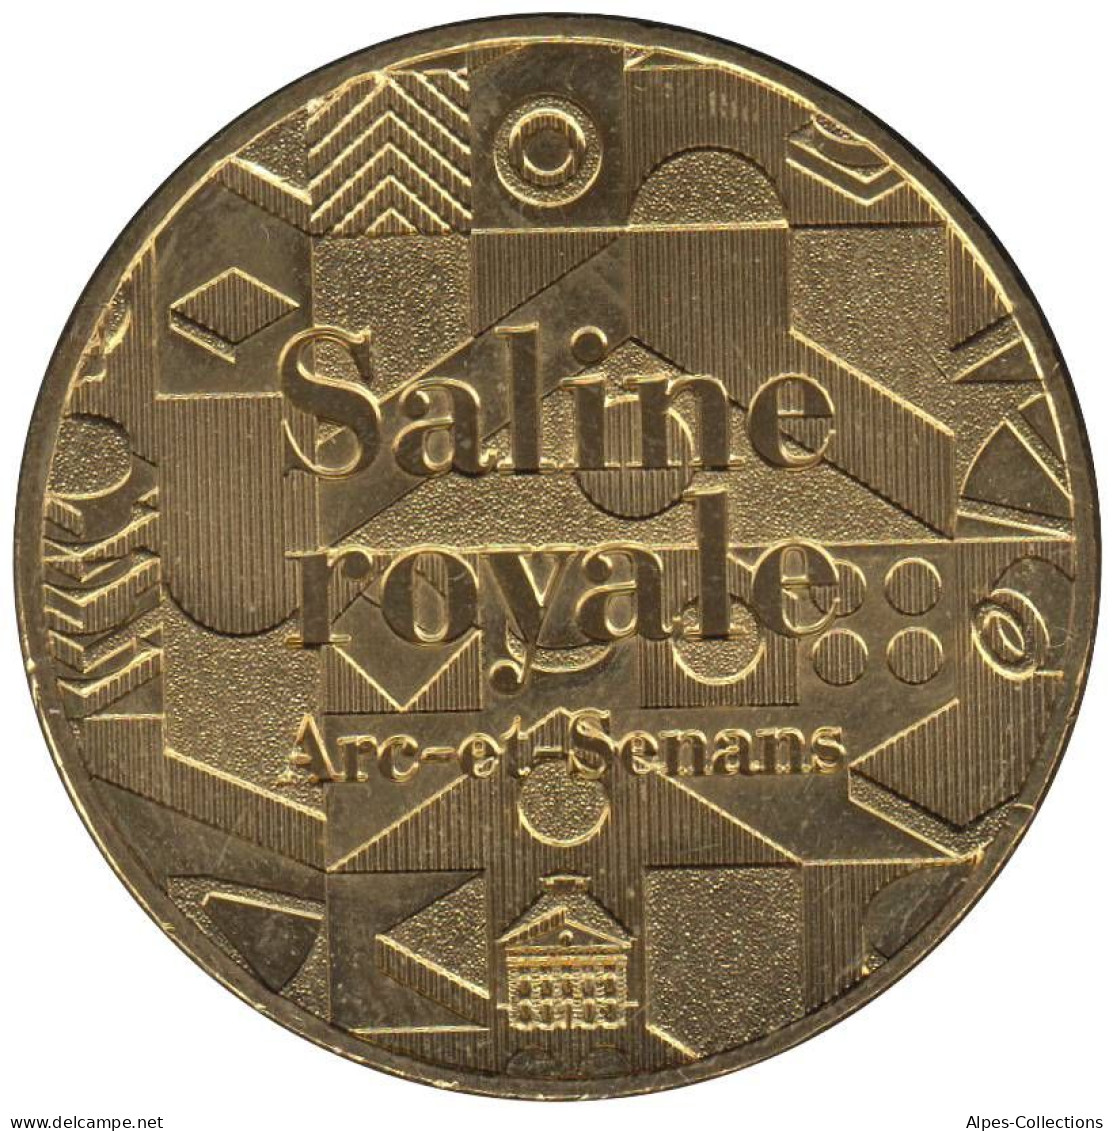 25-2051 - JETON TOURISTIQUE MDP - Saline Royale Arc Et Senans - 2015.1 - 2015